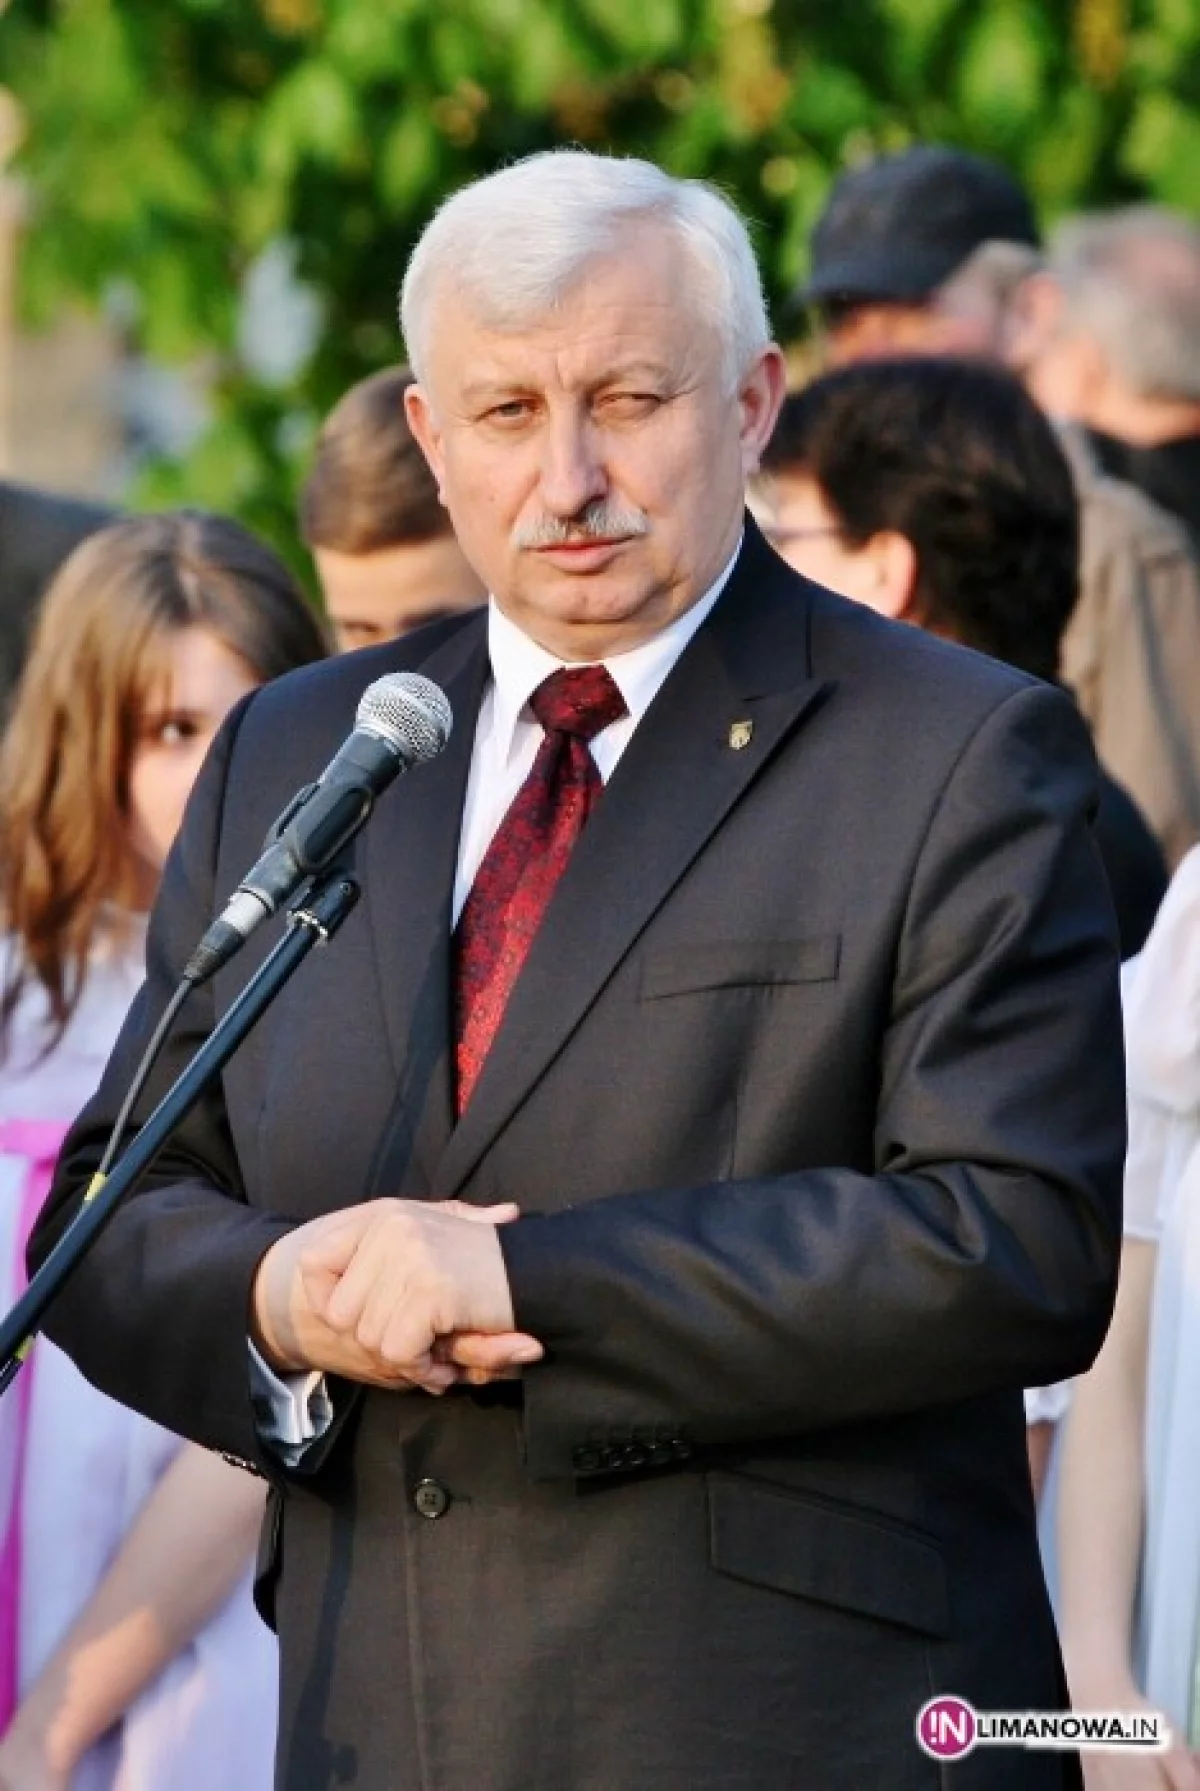 Burmistrz Władysław Bieda otrzymał jednogłośne absolutorium